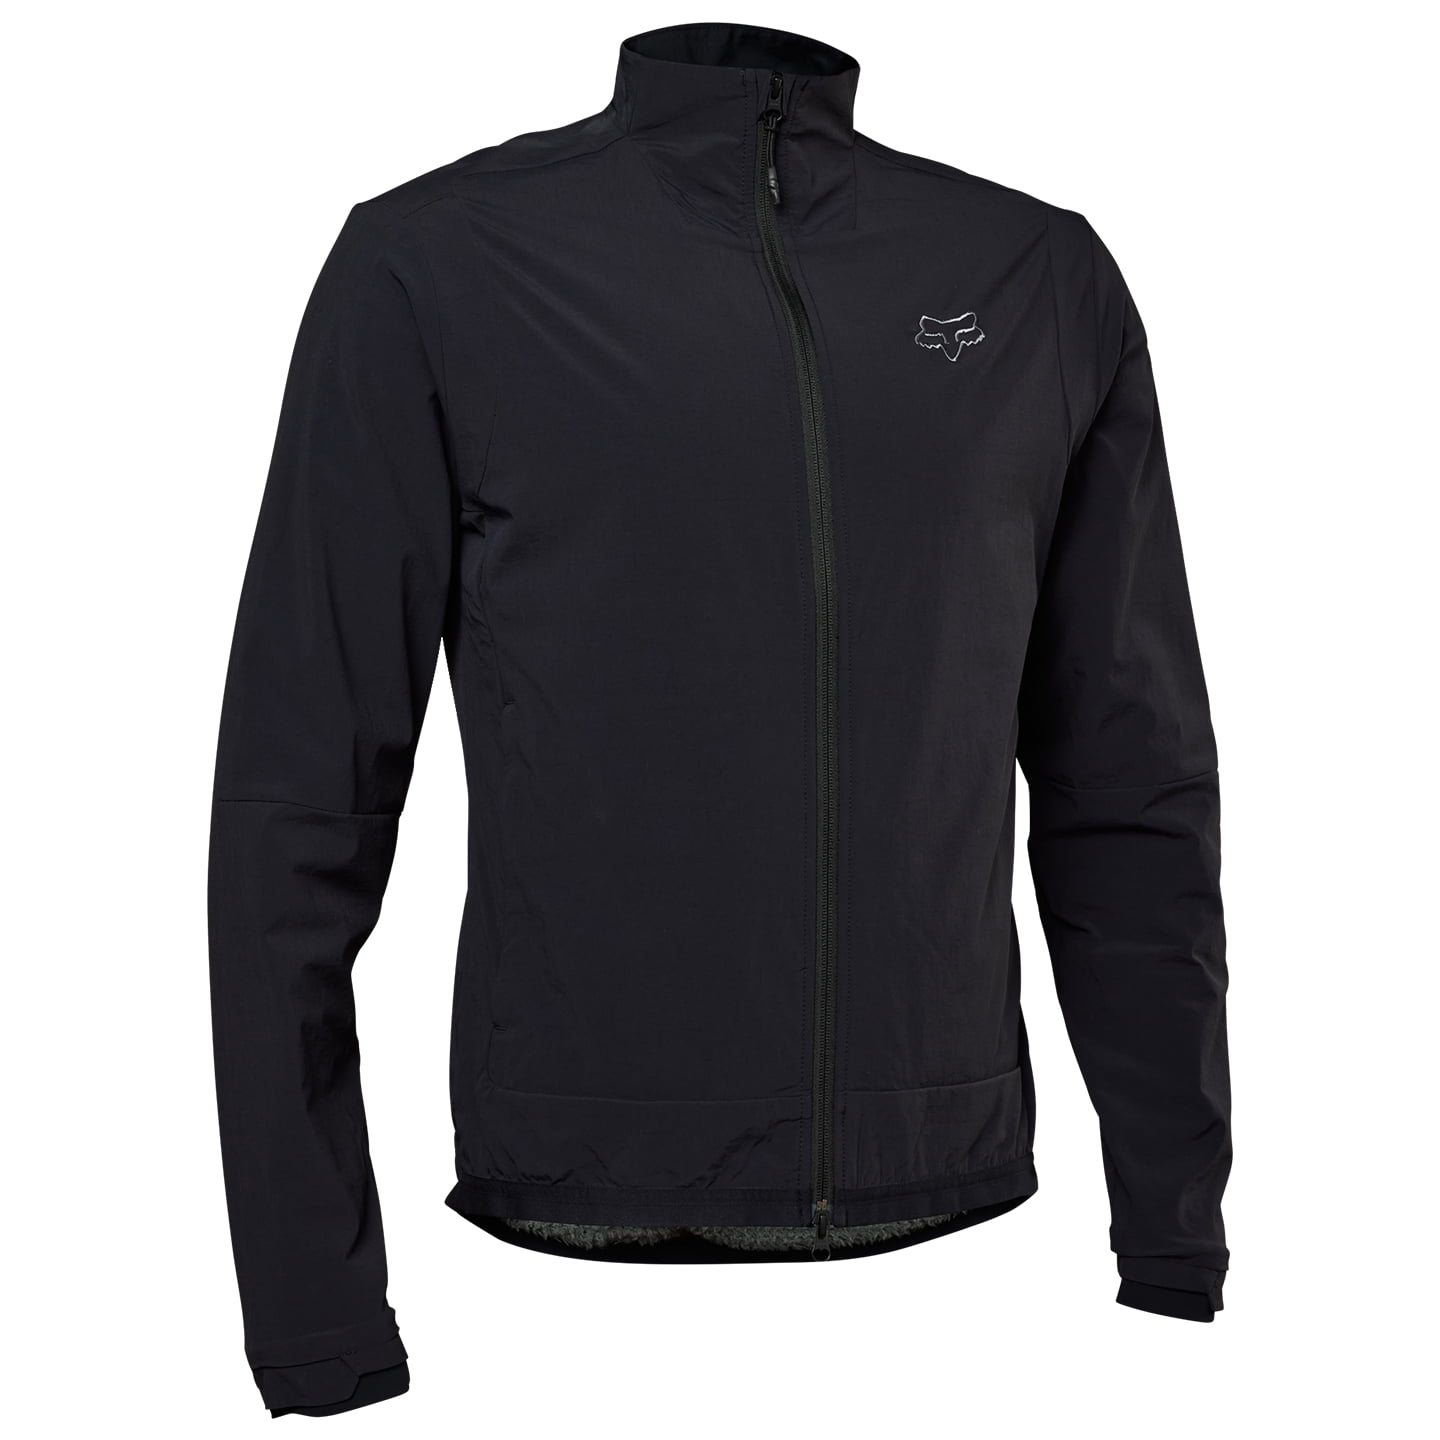 FOX Defend Fire Alpha Winter Jacket Thermal Jacket, for men, size S, Winter jacket, Bike gear